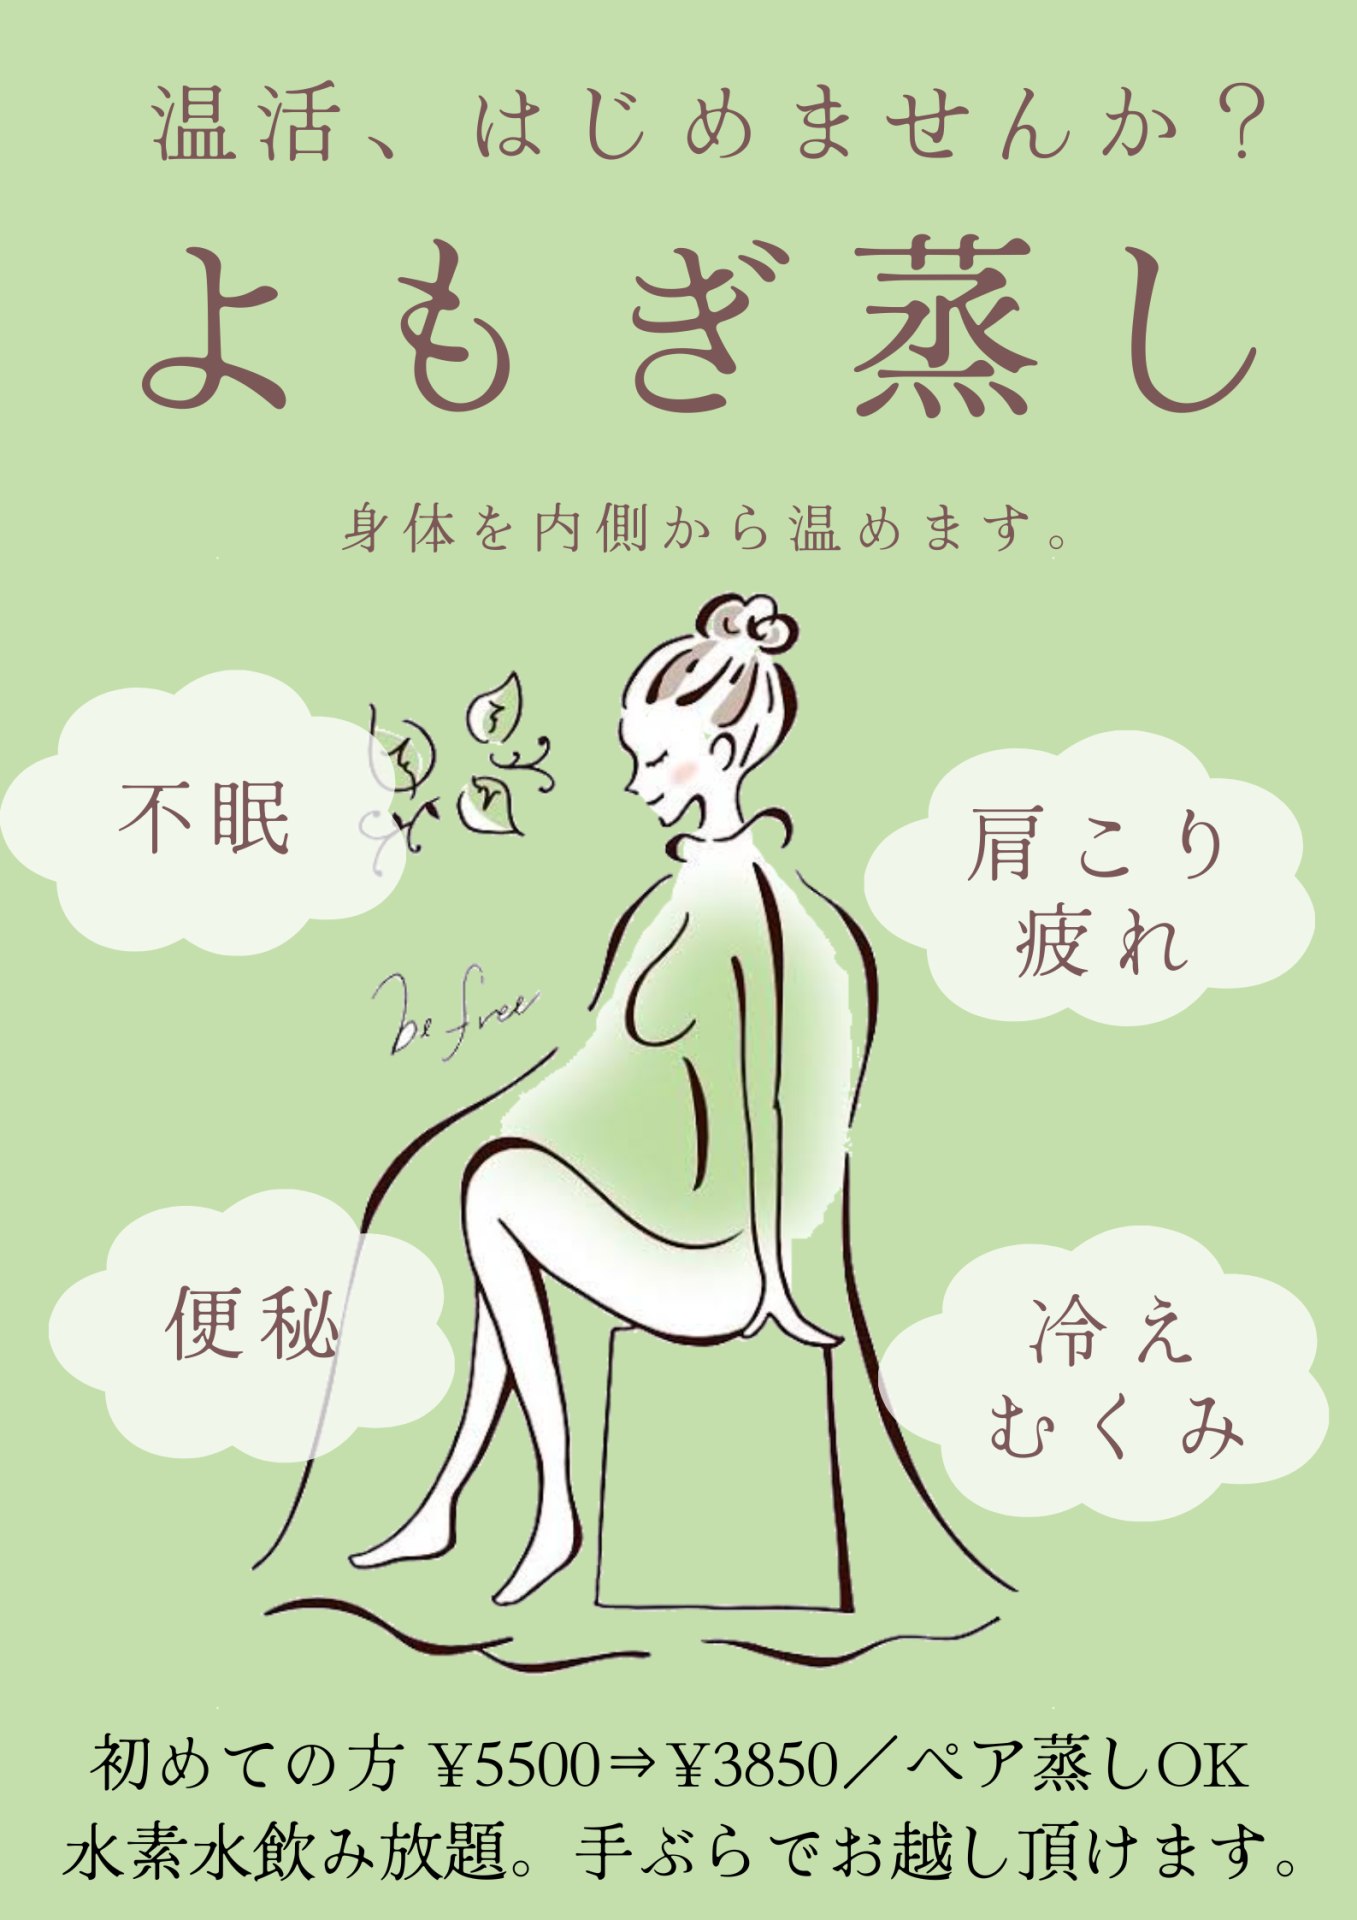 大阪育毛サロンのよもぎ蒸し。美と健康に効果があり、身体の予防ケアにおすすめです。